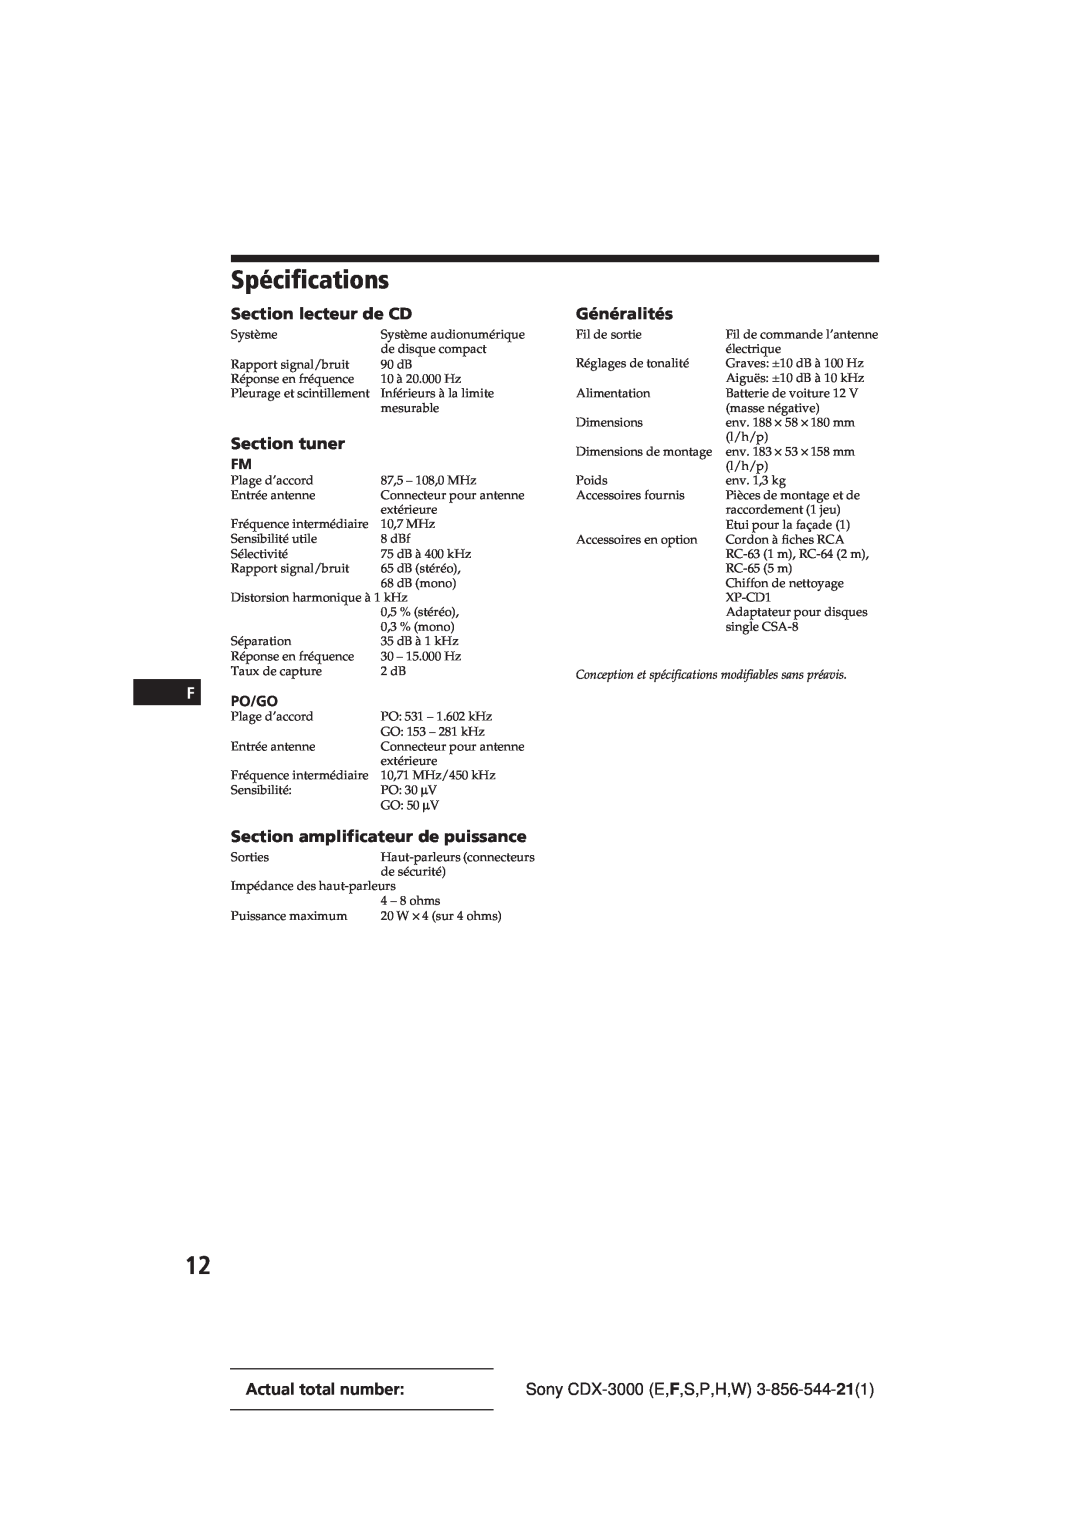 Sony CDX-3000 manual Spécifications, Section lecteur de CD, Section amplificateur de puissance, Section tuner, Généralités 